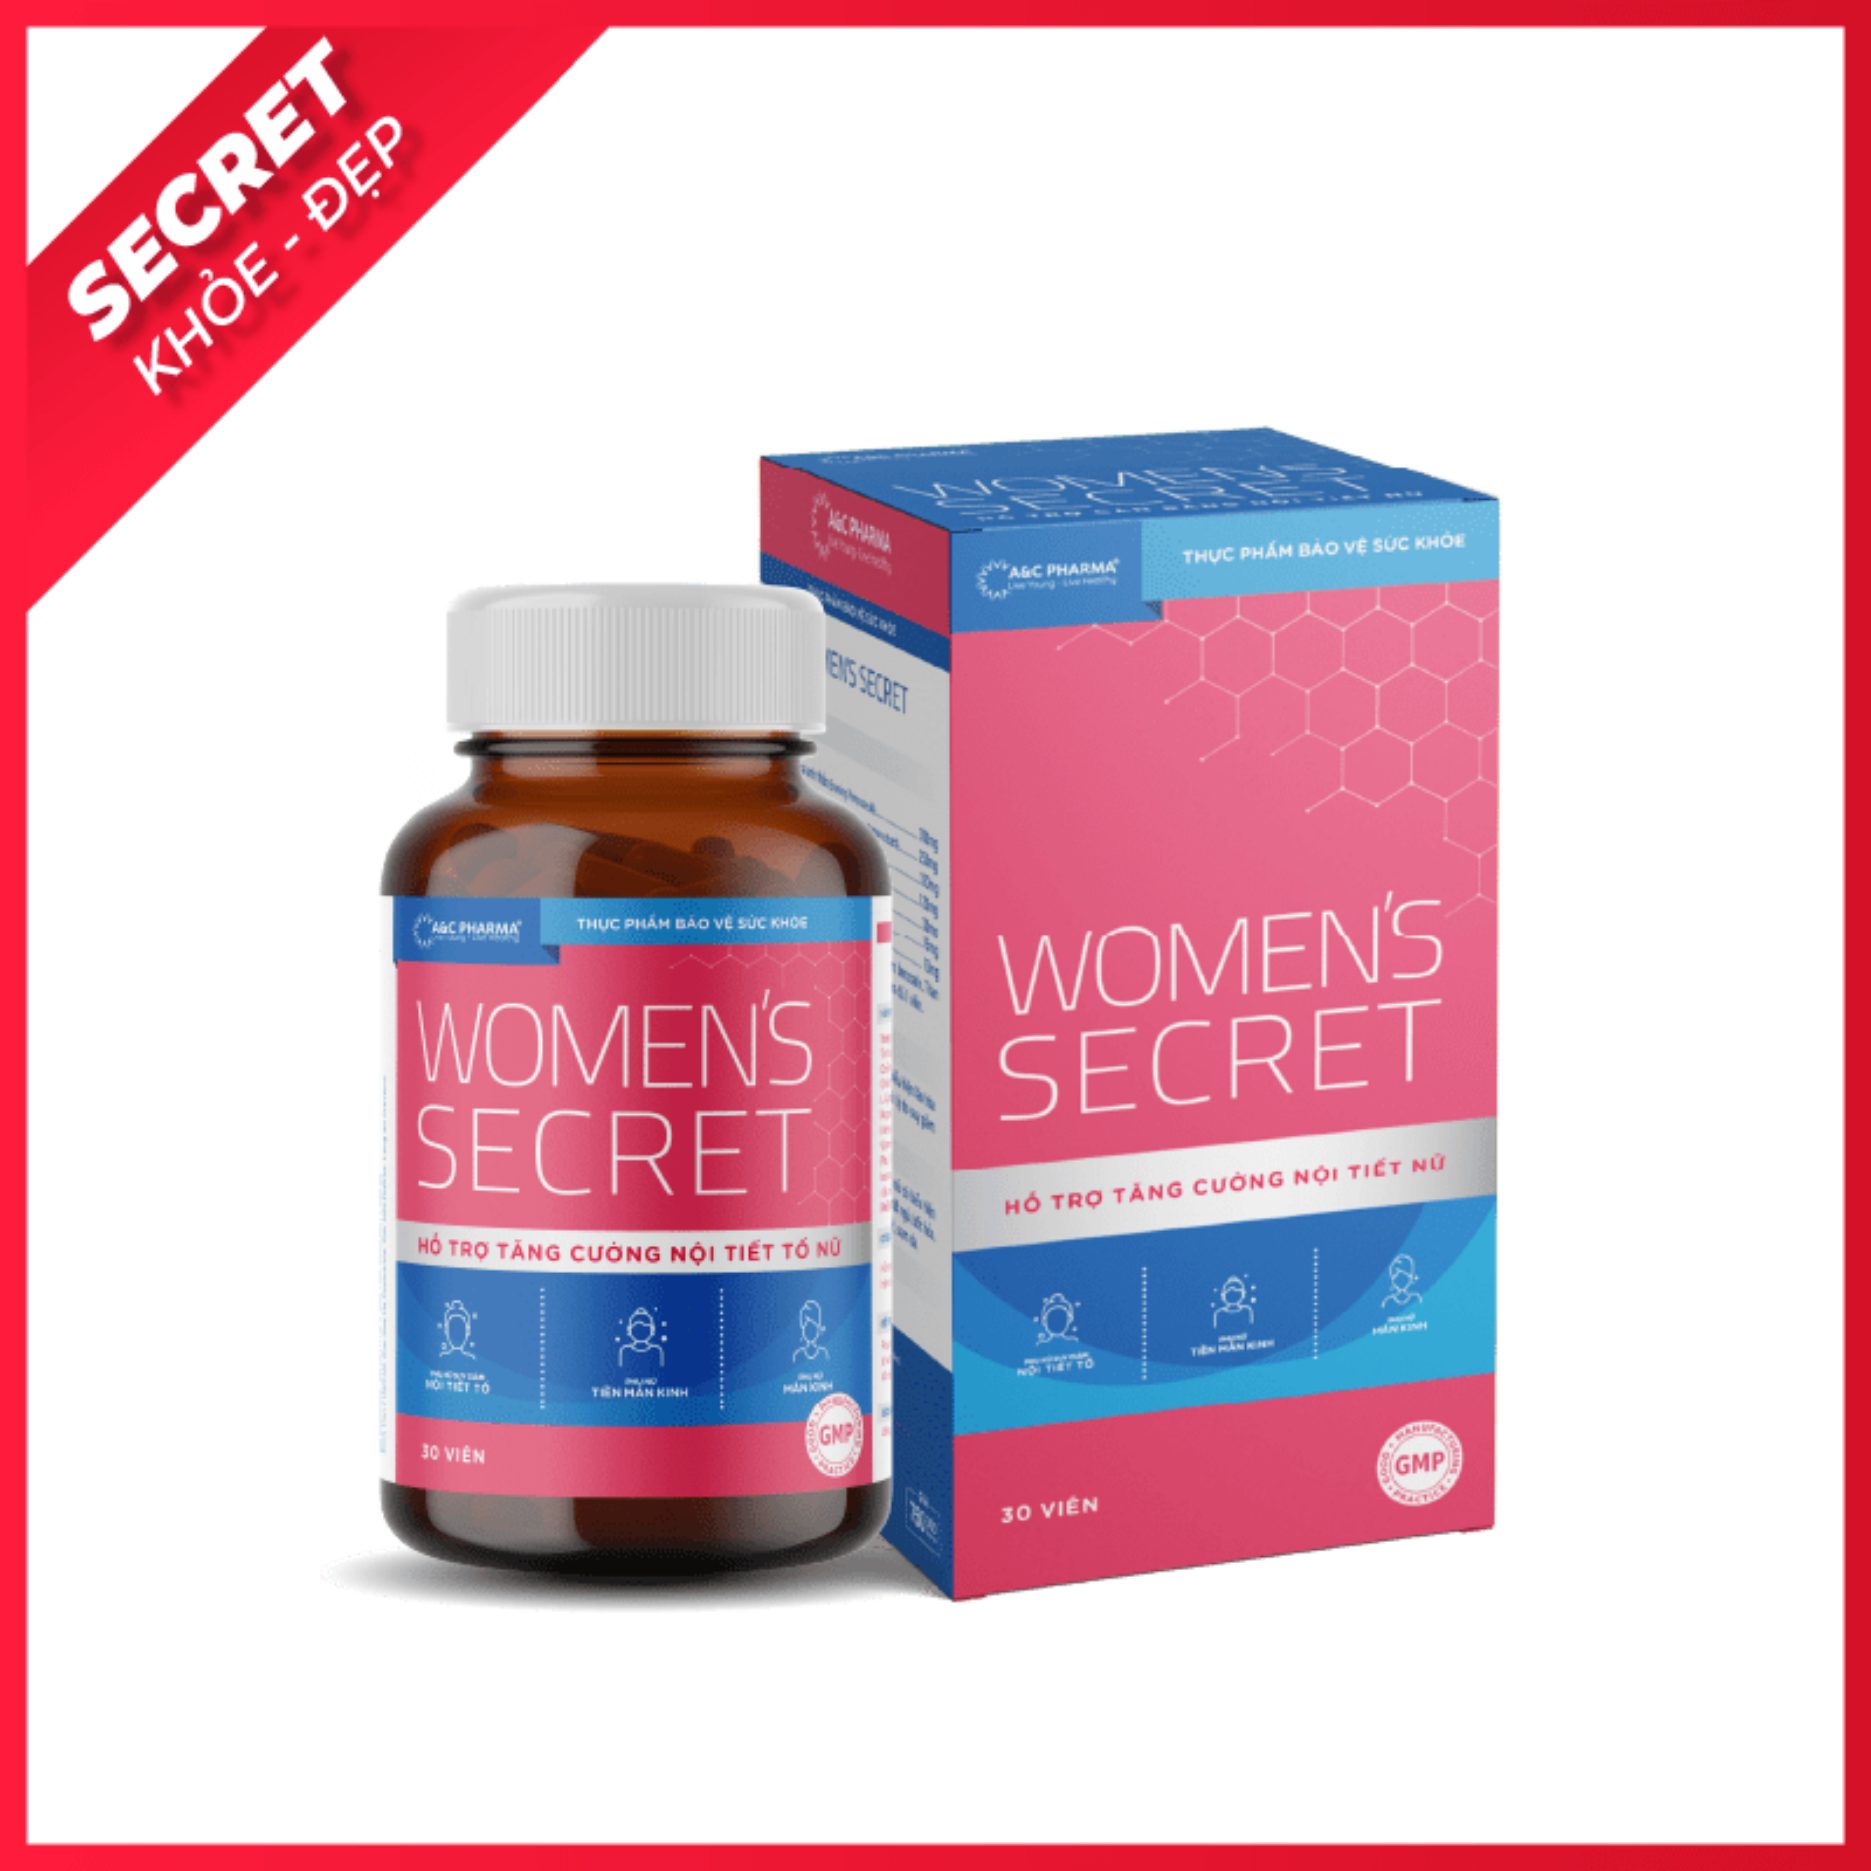 Viên uống Tăng cường nội tiết tố nữ Women s Secret A&C Pharma thumbnail